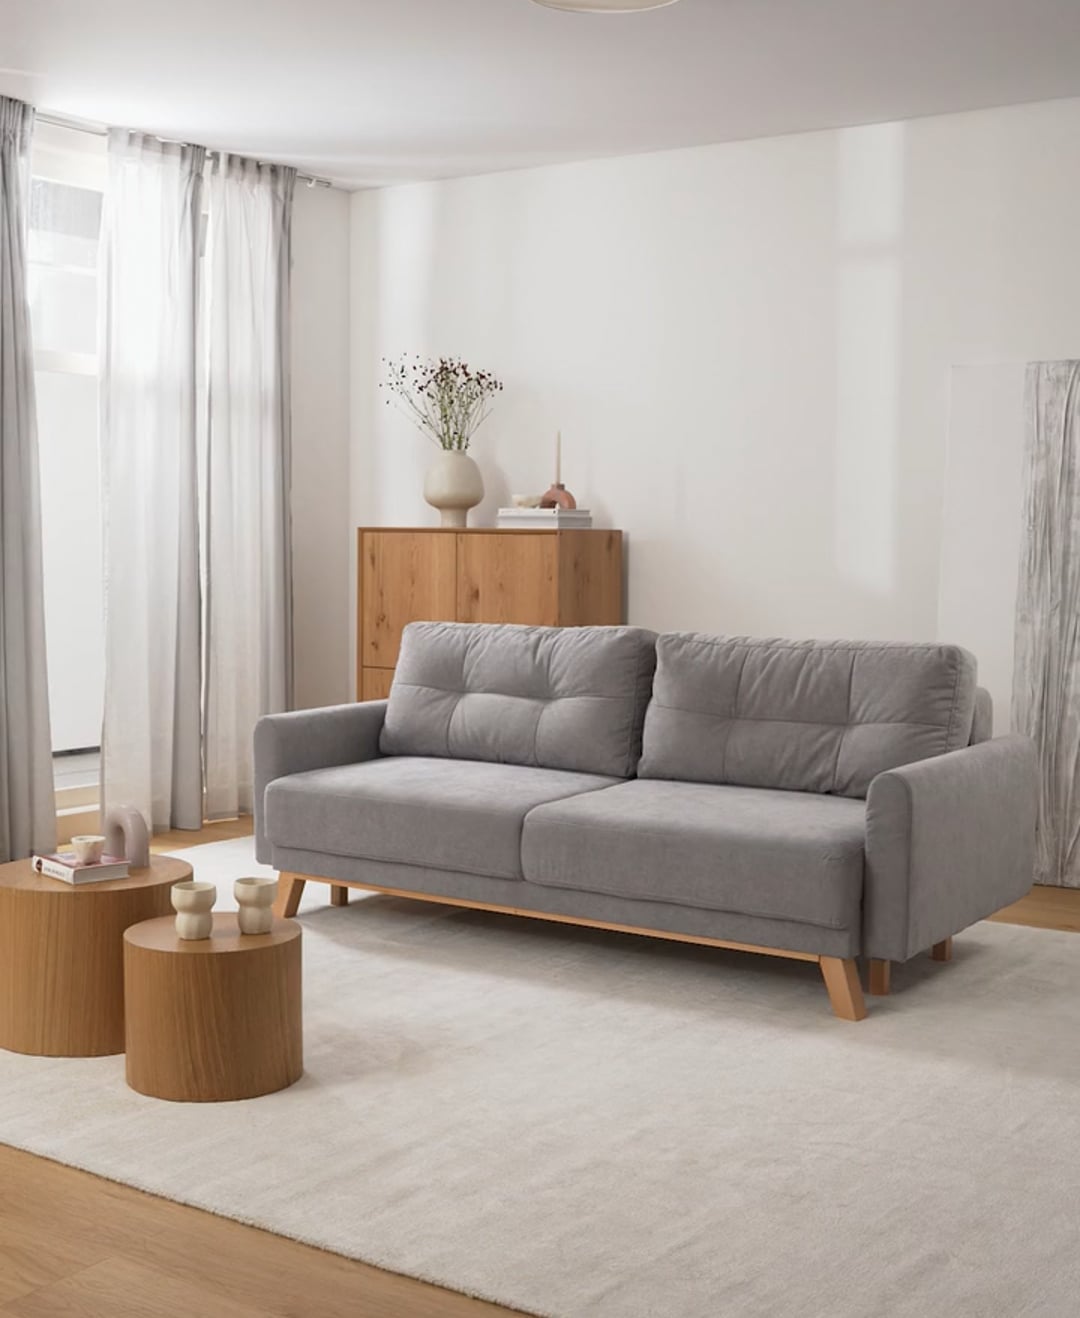 Sofá cama pequeño de terciopelo gris (3 plazas) Balio, abatible | Westwing